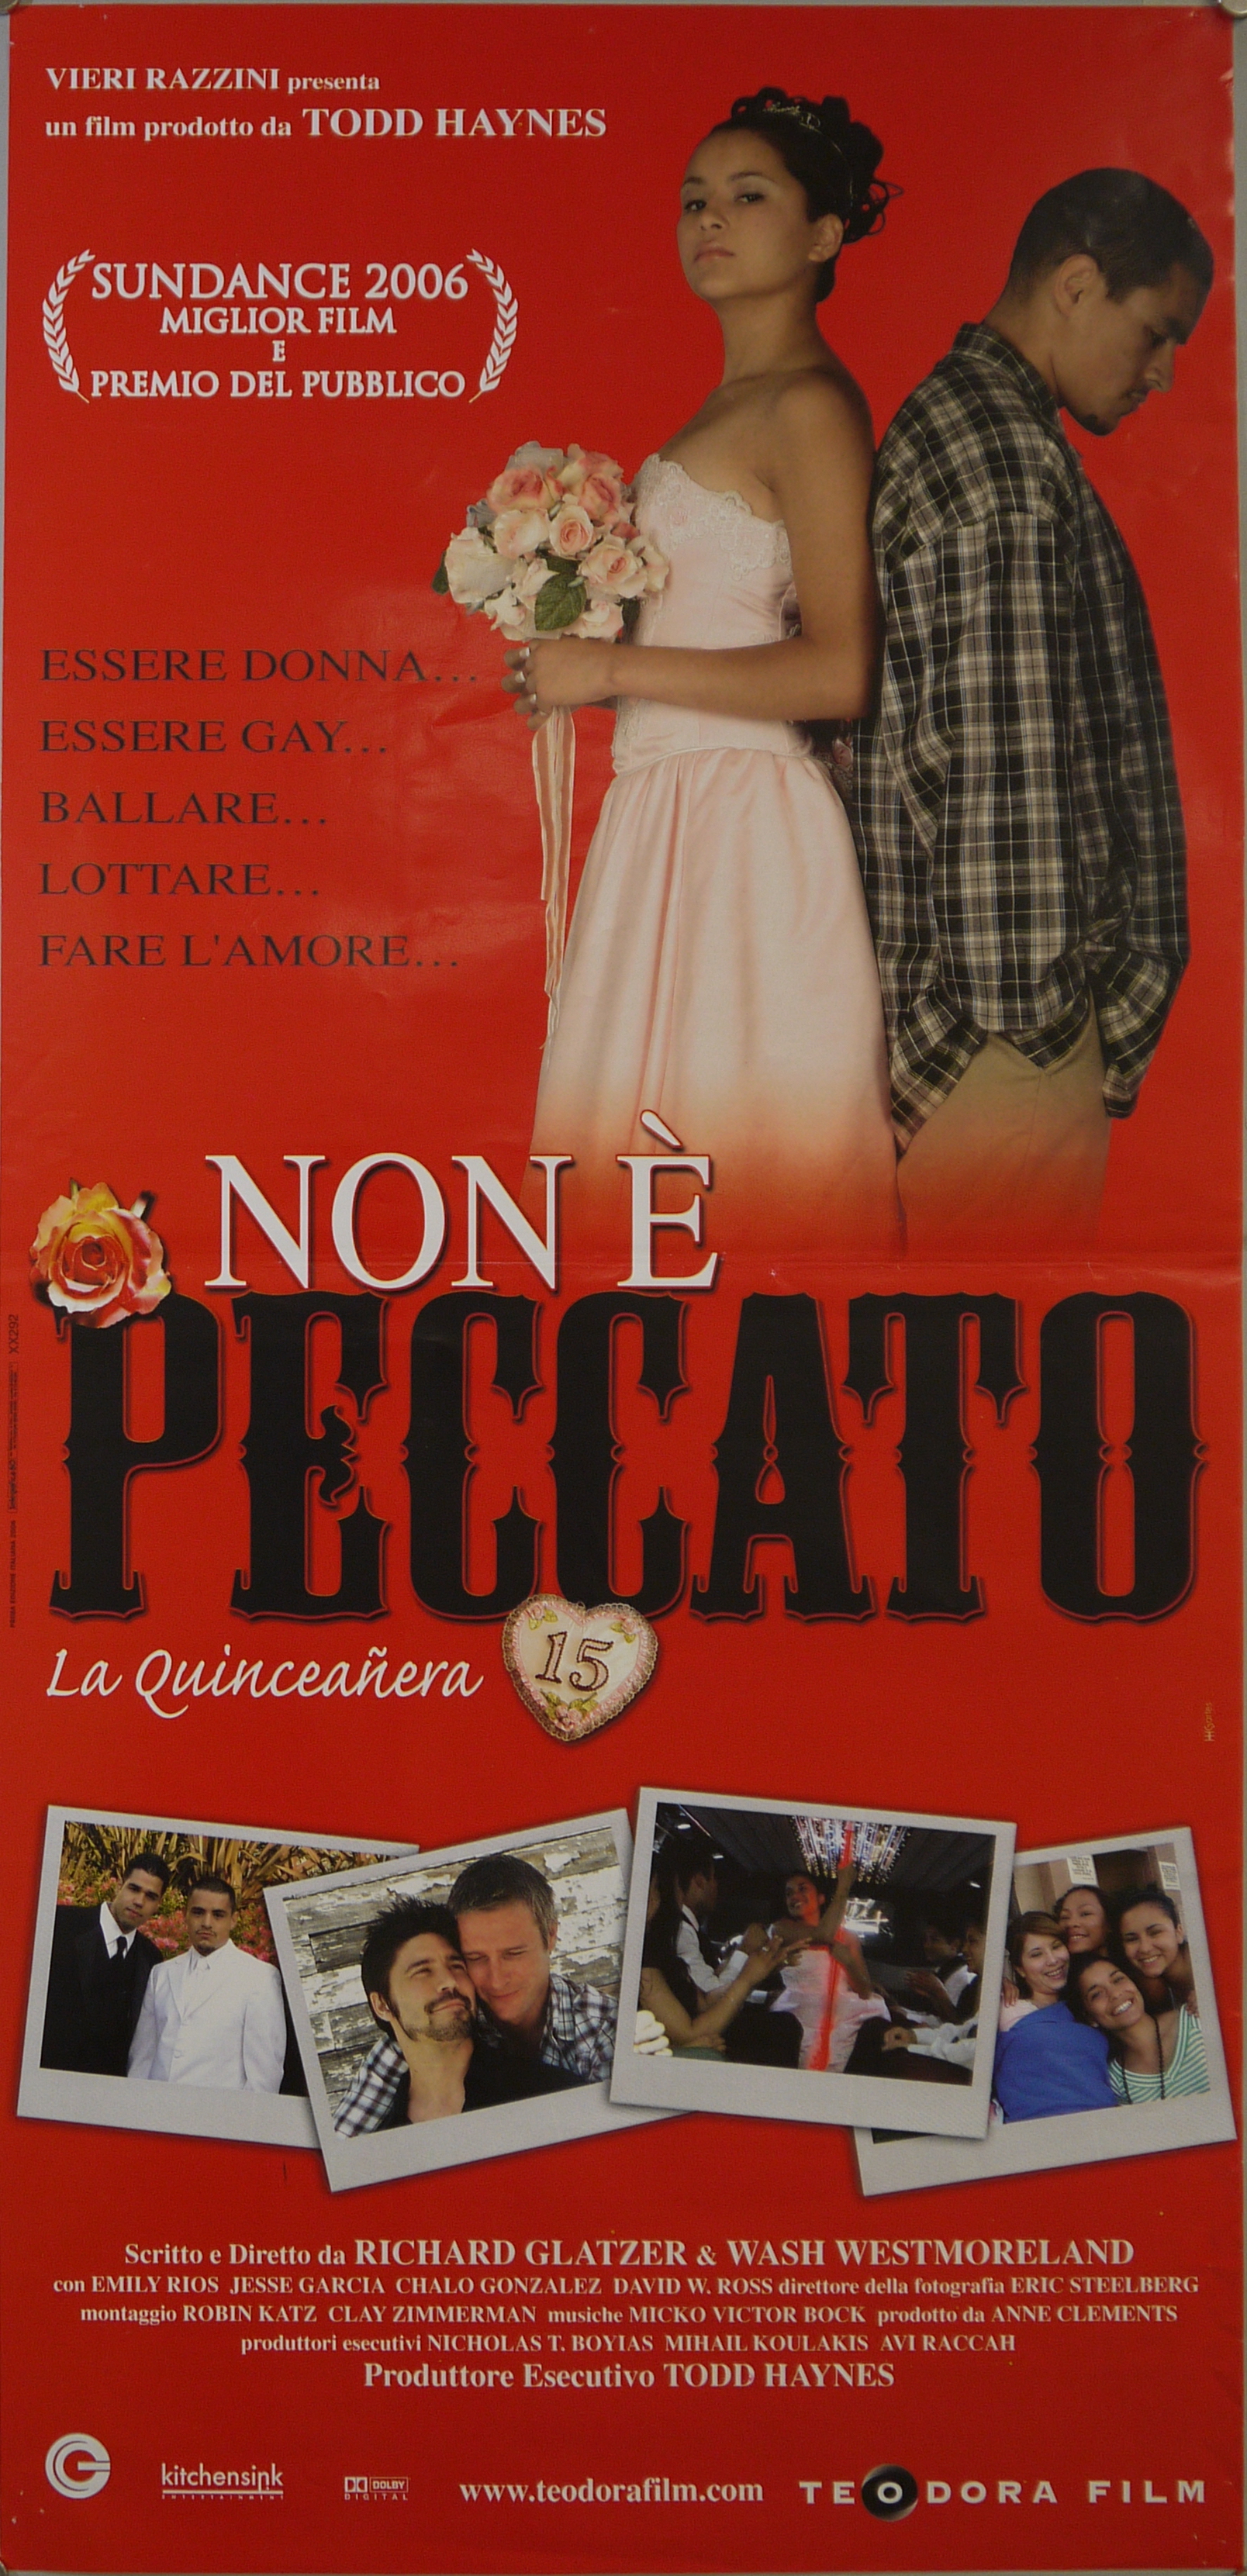 Magdalena (Emily Rios) e Carlos (Jesse Garcia) schiena contro schiena, in basso quattro scatti fotografici dal film (locandina) - ambito statunitense (inizio XXI)